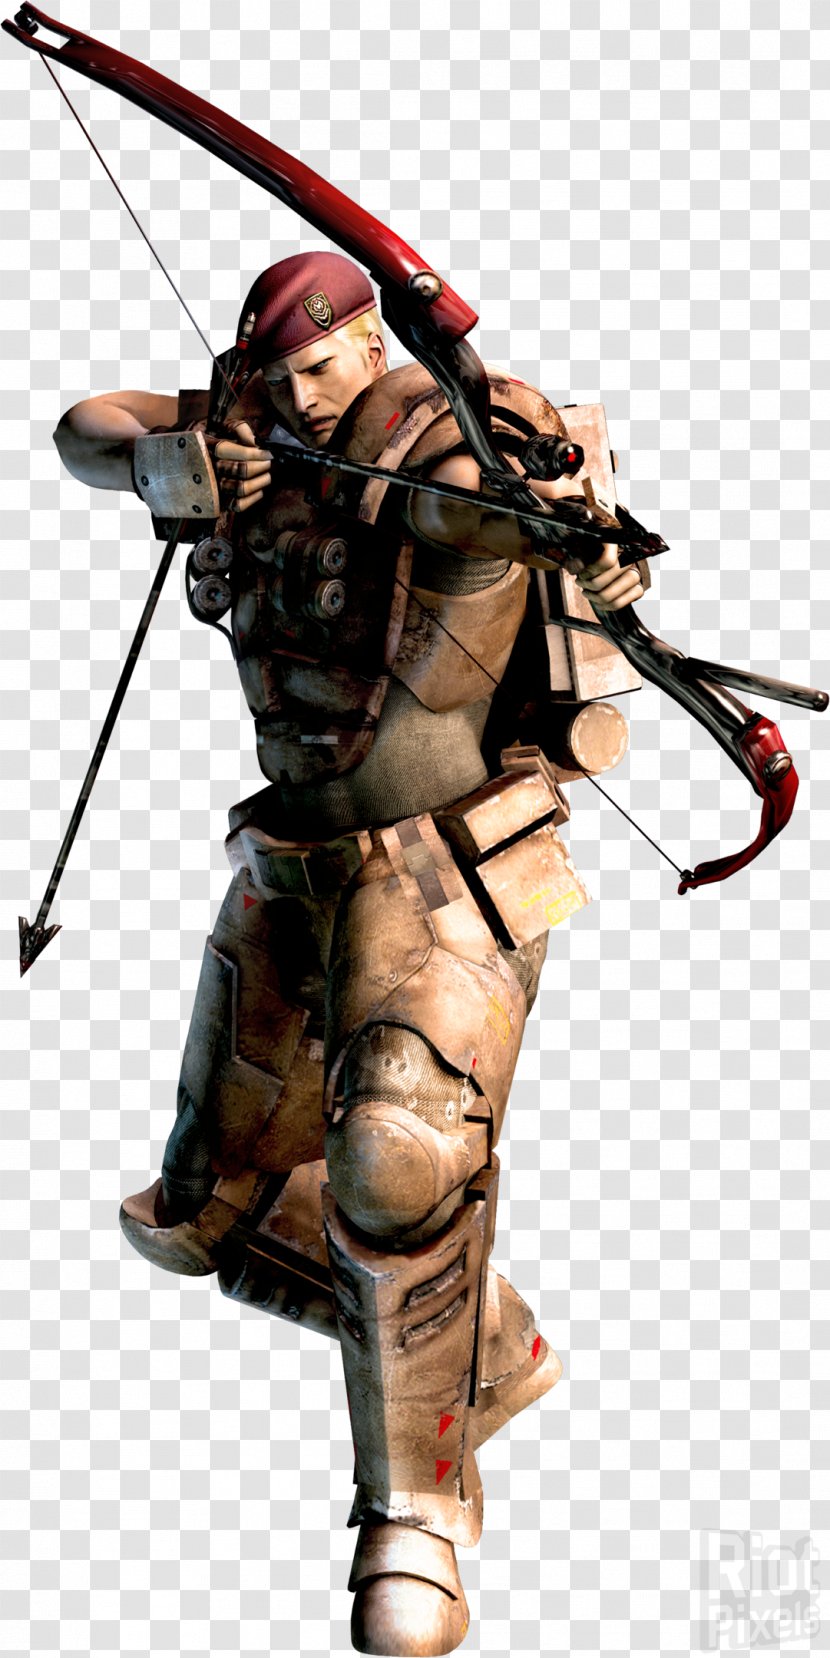 Resident Evil: The Mercenaries 3D Evil 4 Zero Claire Redfield Albert Wesker - Weapon Transparent PNG